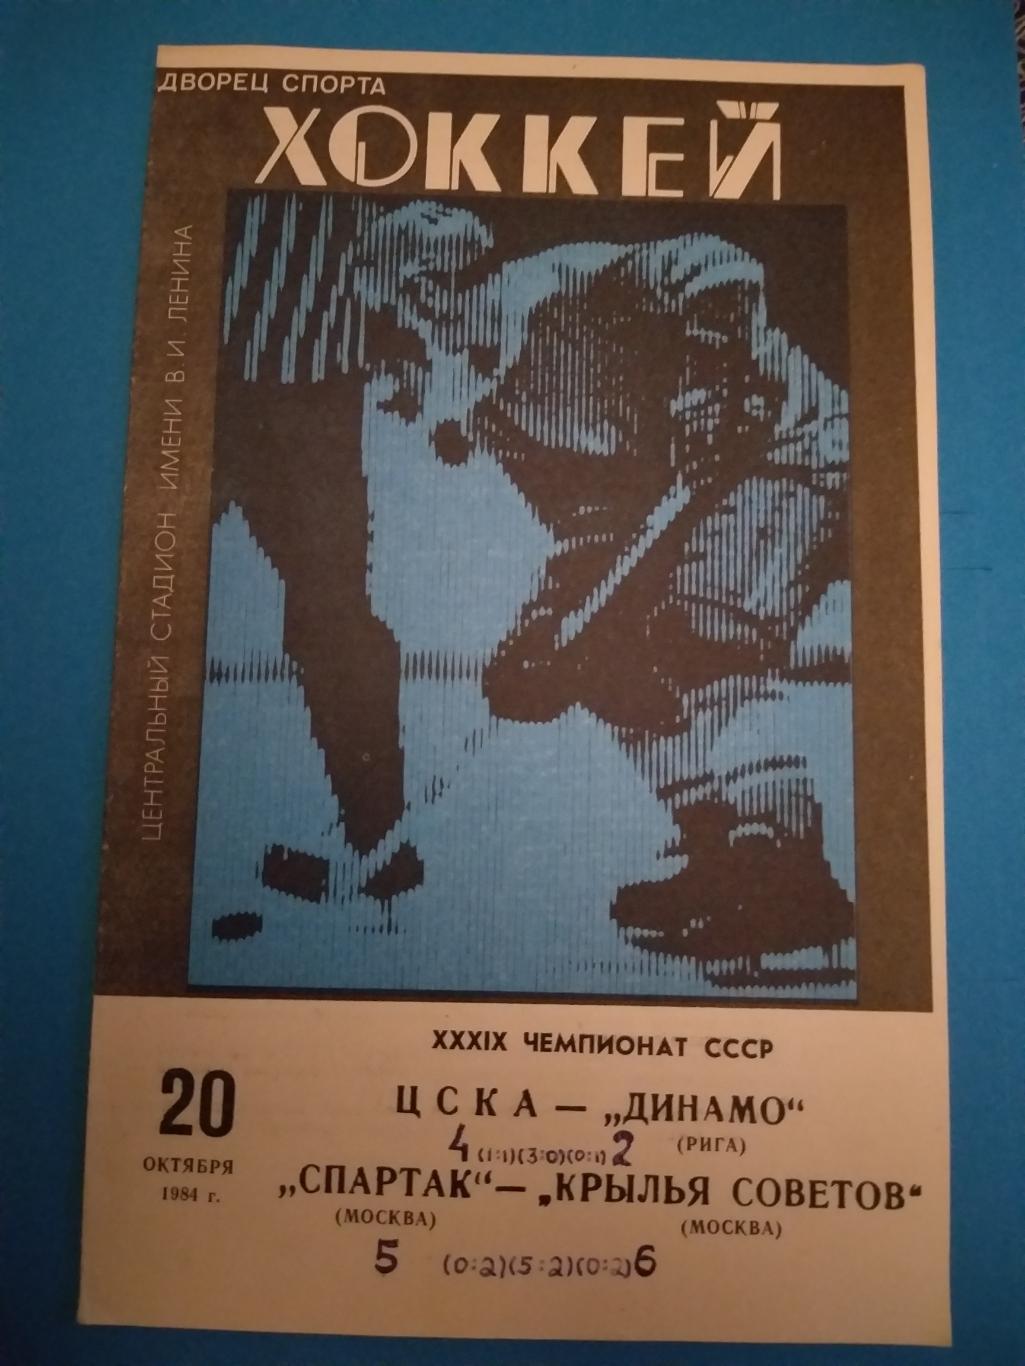 ЦСКА- Динамо(Рига)+Спартак(Москва) -Крылья Советов(Москва) 20.10.1984